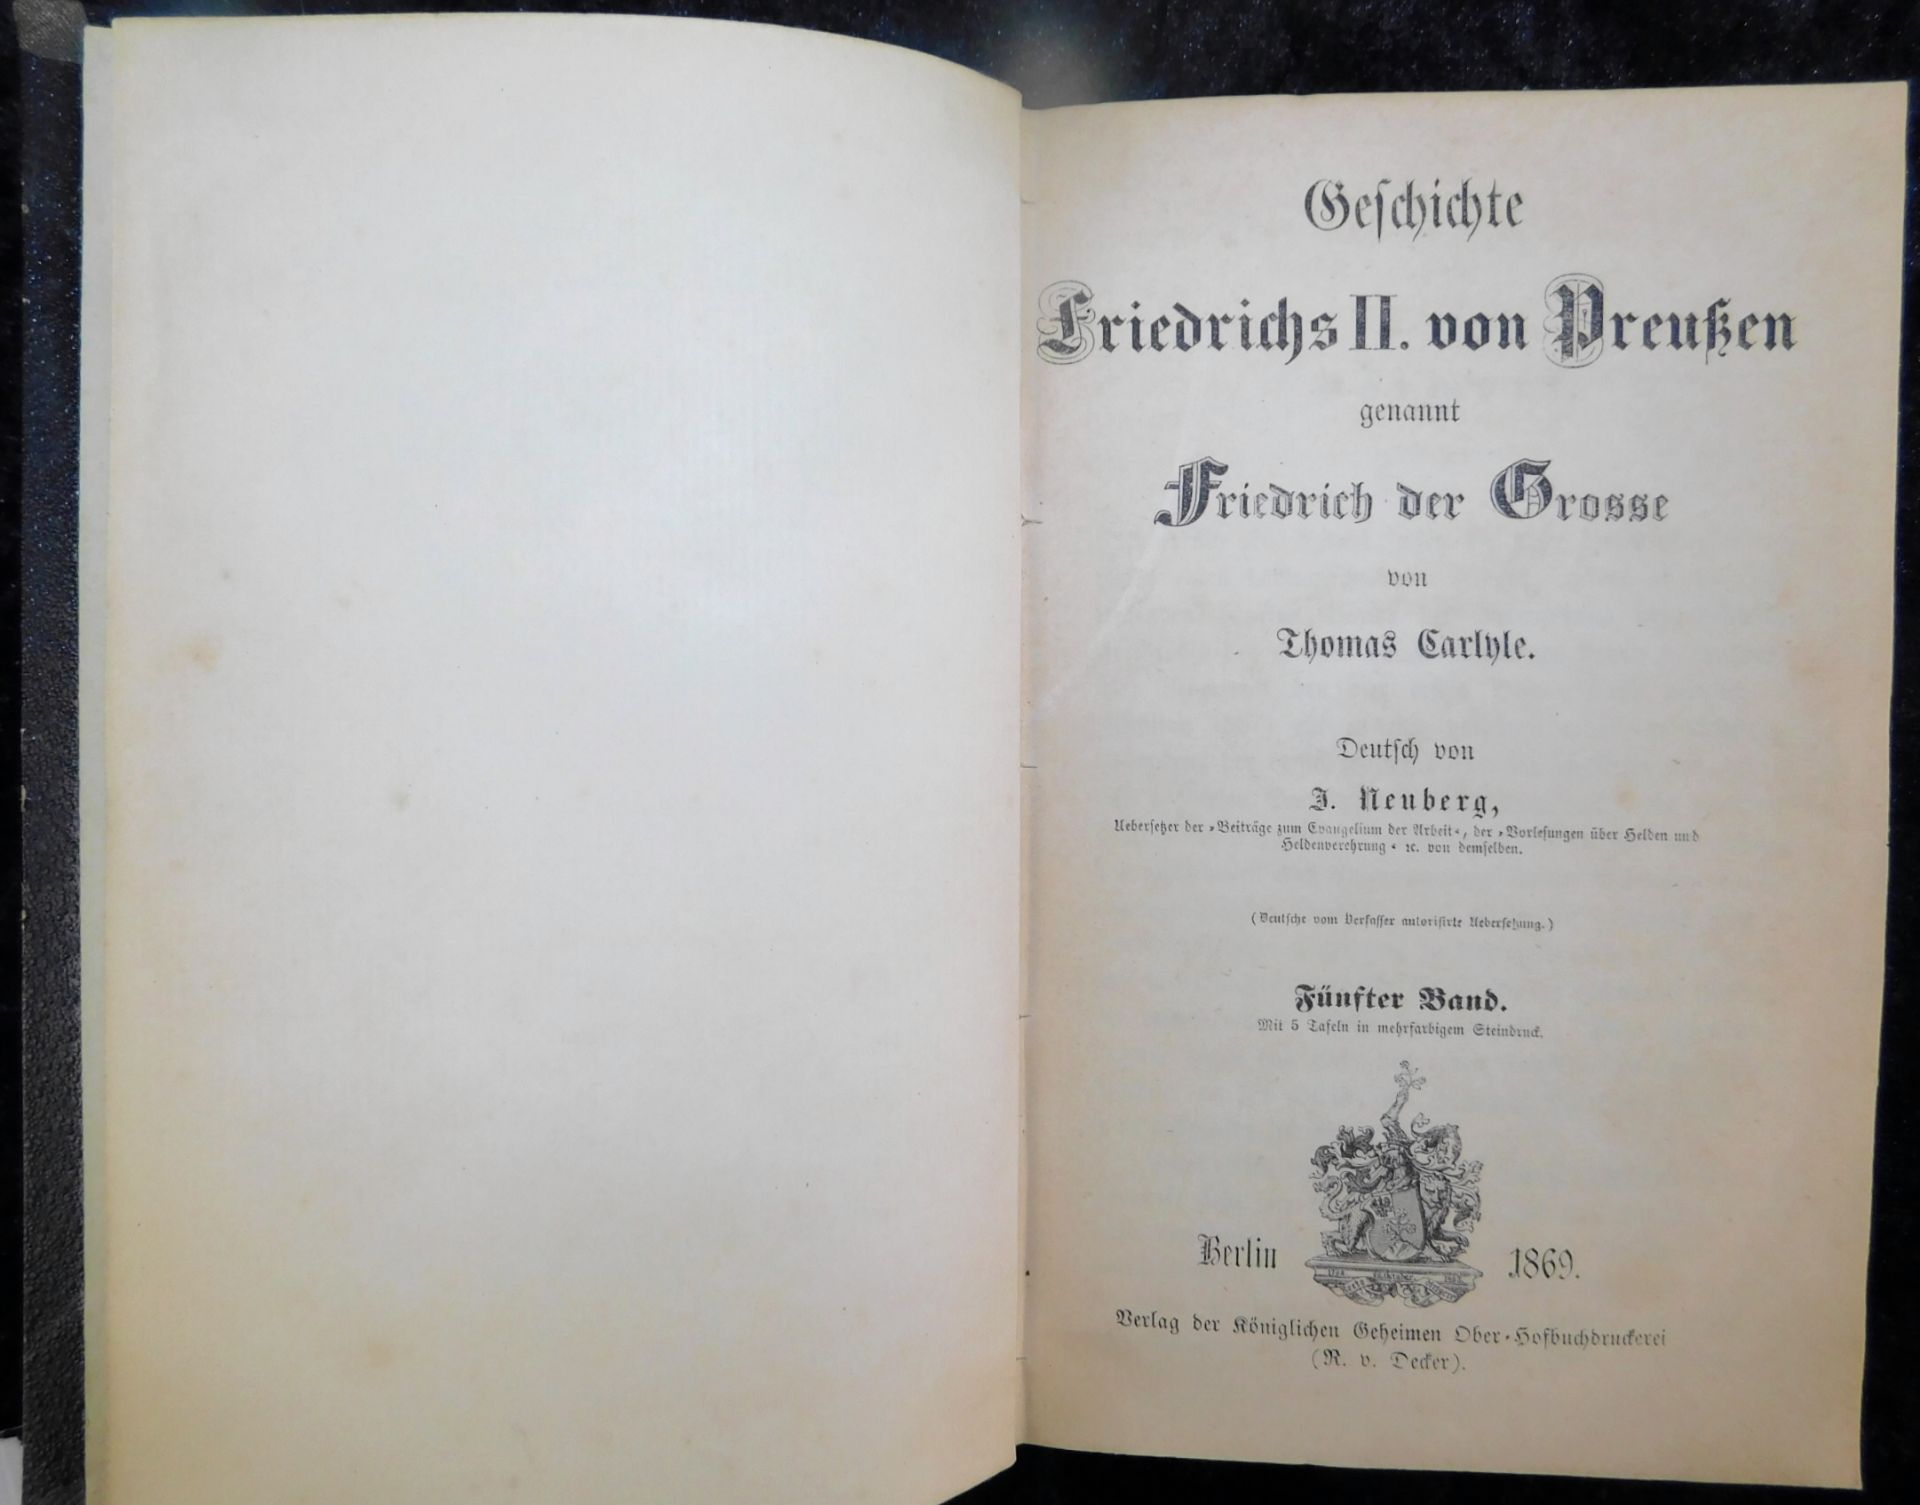 Friedrich der Große, In 5 Bänden, Thomas Carlyle, Deutsch von J. Neuberg, Verlag R. Decker, Berlin 1 - Image 6 of 6